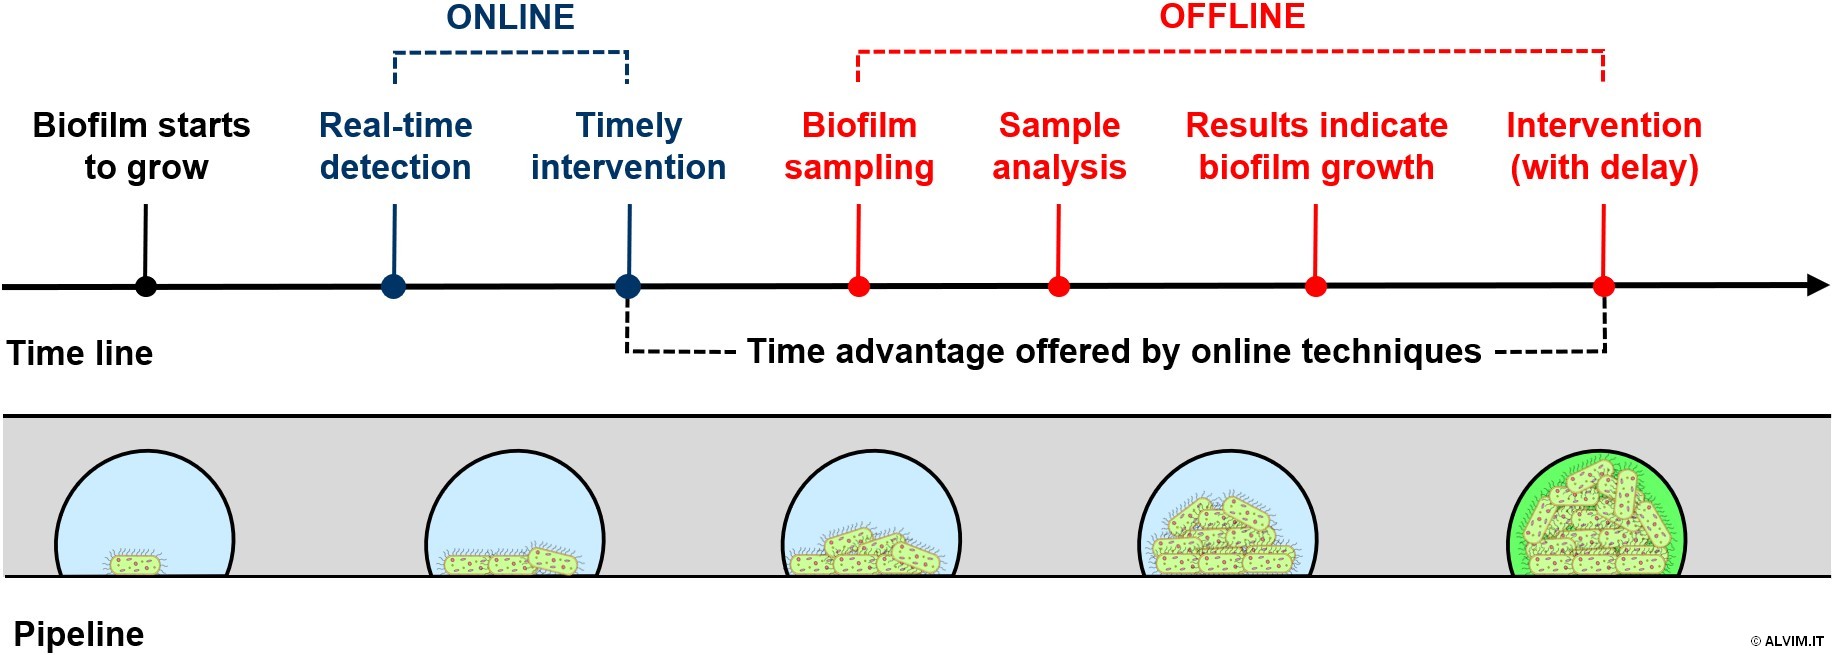 ONLINE VS OFFLINE techniques for biofilm monitoring